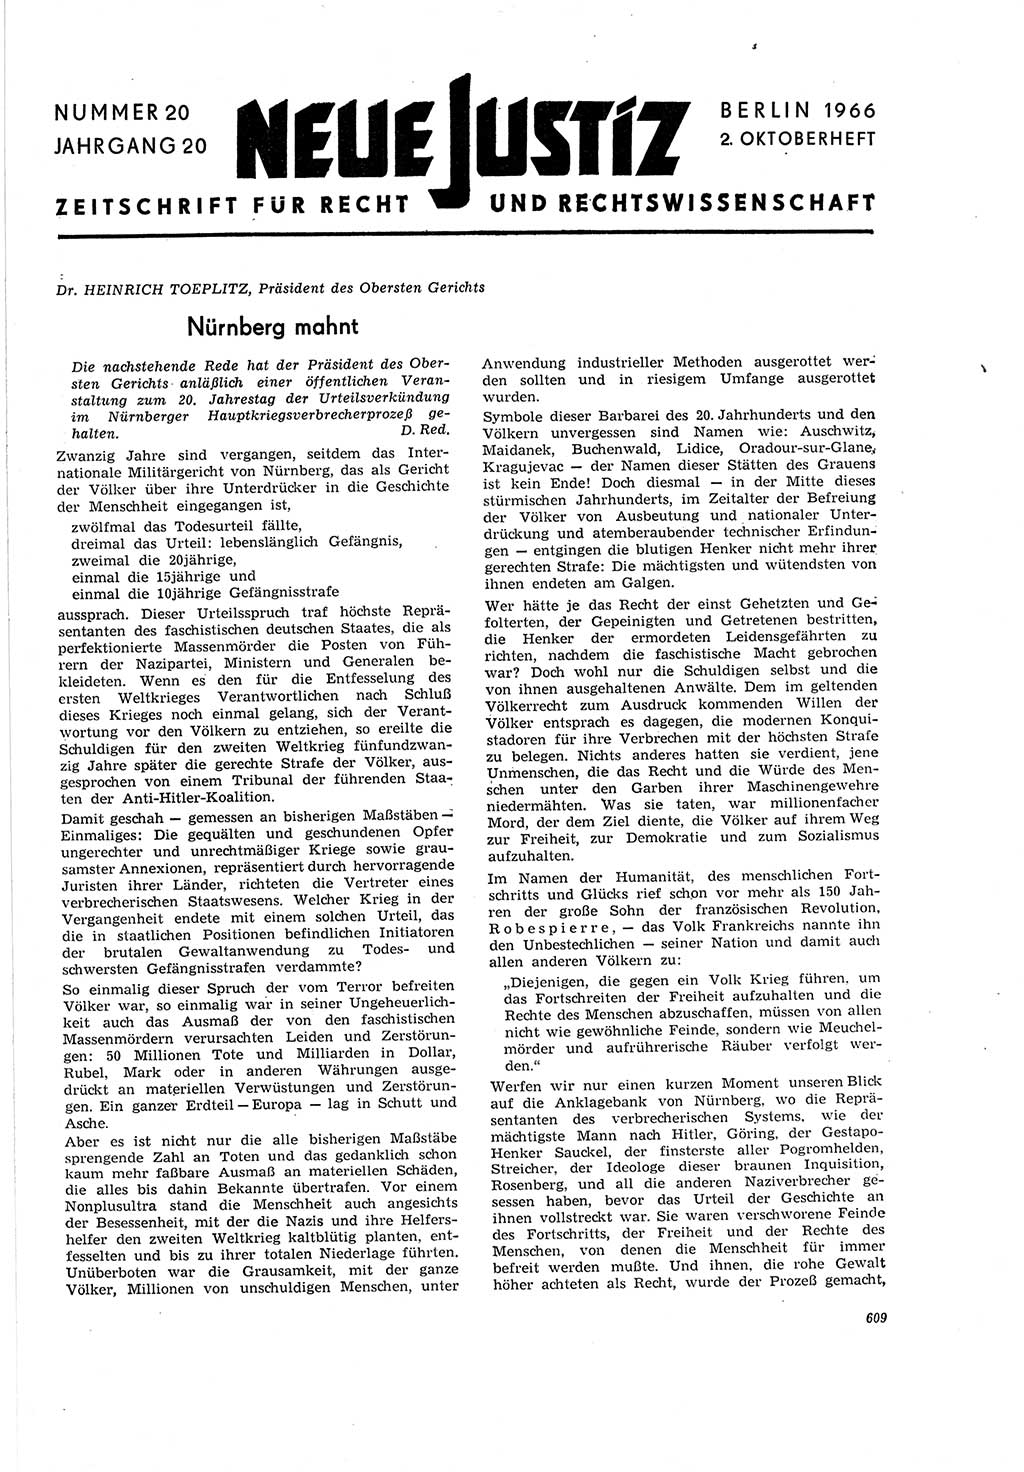 Neue Justiz (NJ), Zeitschrift für Recht und Rechtswissenschaft [Deutsche Demokratische Republik (DDR)], 20. Jahrgang 1966, Seite 609 (NJ DDR 1966, S. 609)